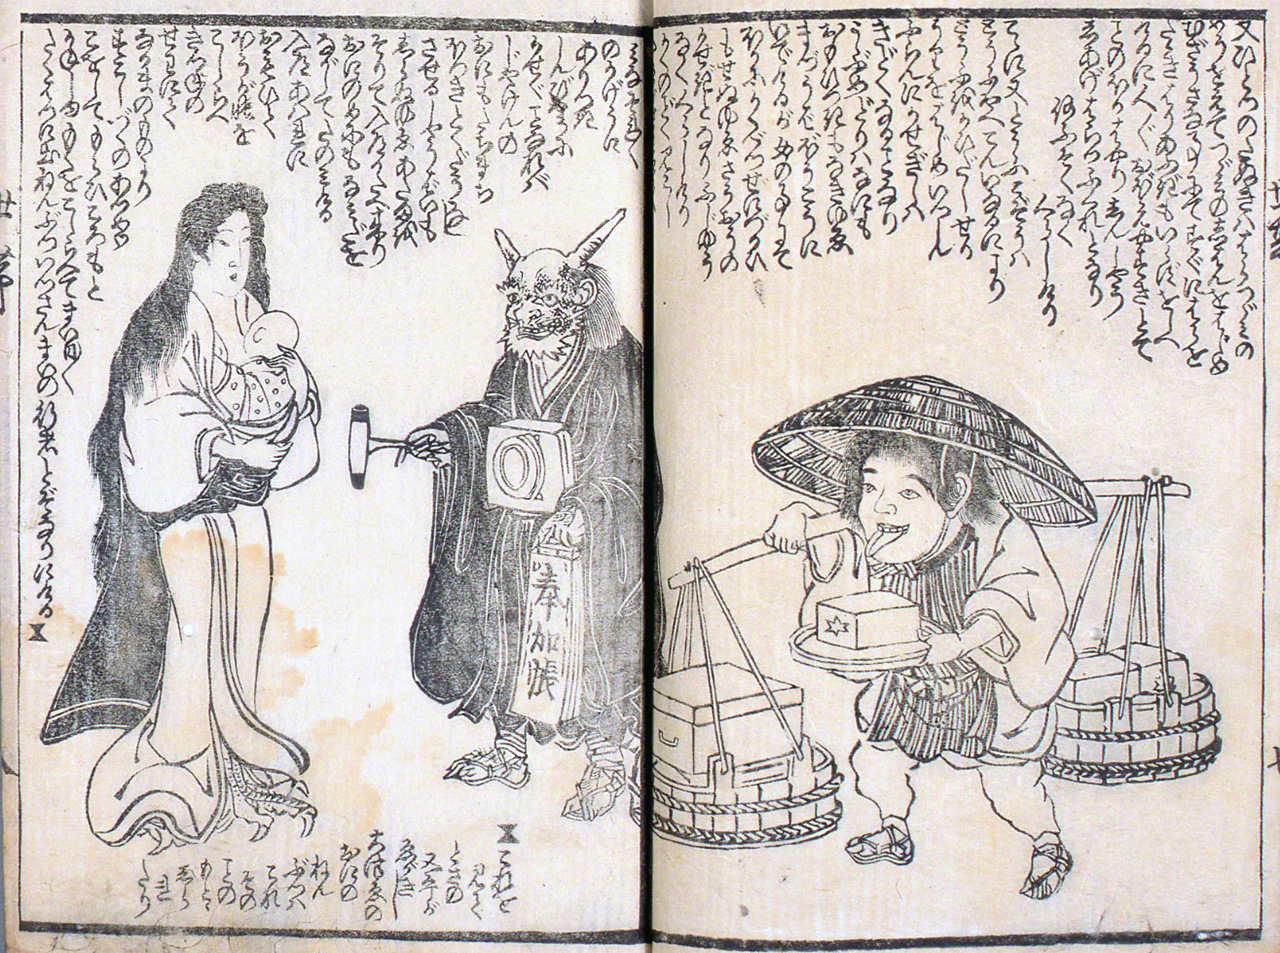 Bakemono setai katagi (El temperamento doméstico de los bakemonos), otro kusazōshi con monstruos como protagonistas. Cuenta la historia de unos monstruos que, por orden de Mikoshi-nyūdō, su jefe, dejan de hacer daño a los humanos y se dedican al final a trabajos decentes (colección del autor).